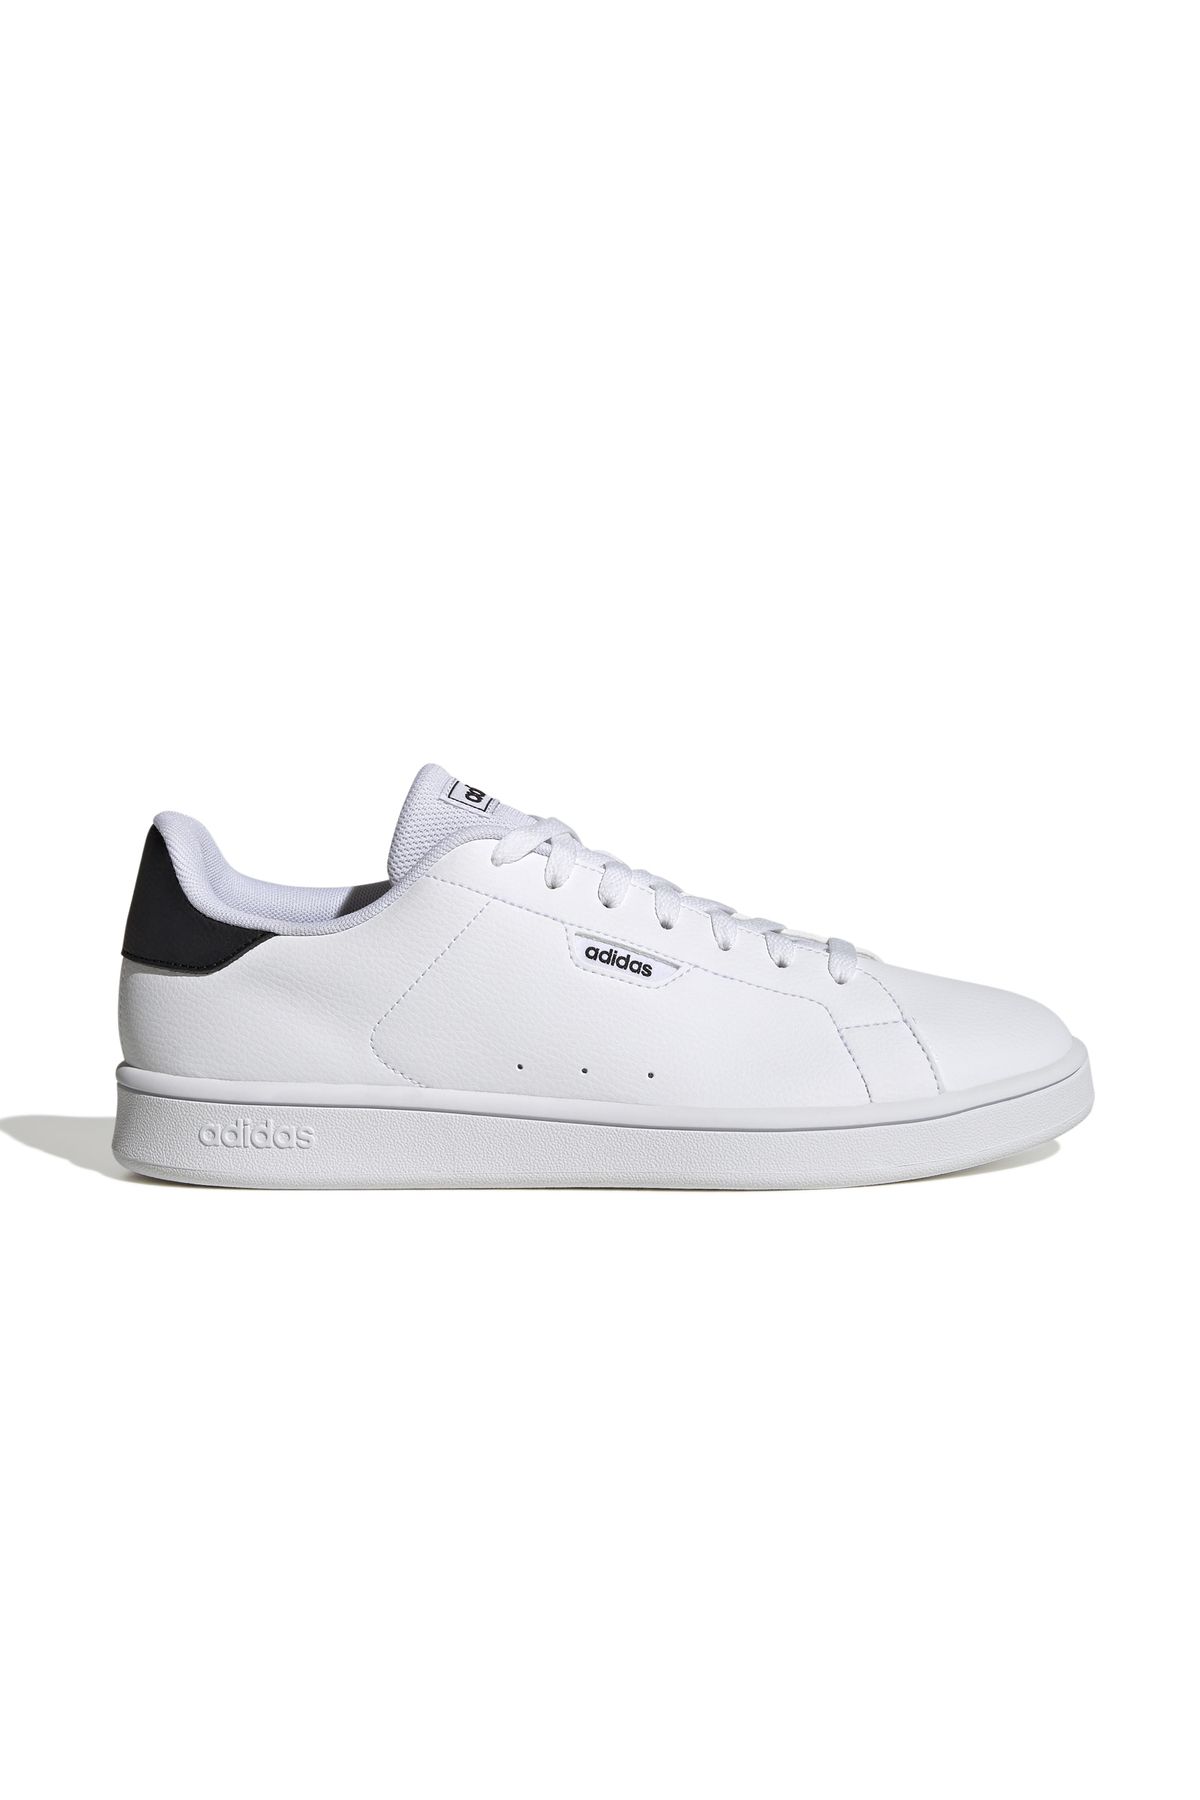 adidas Urban Court Spor Ayakkabı Sneaker Beyaz